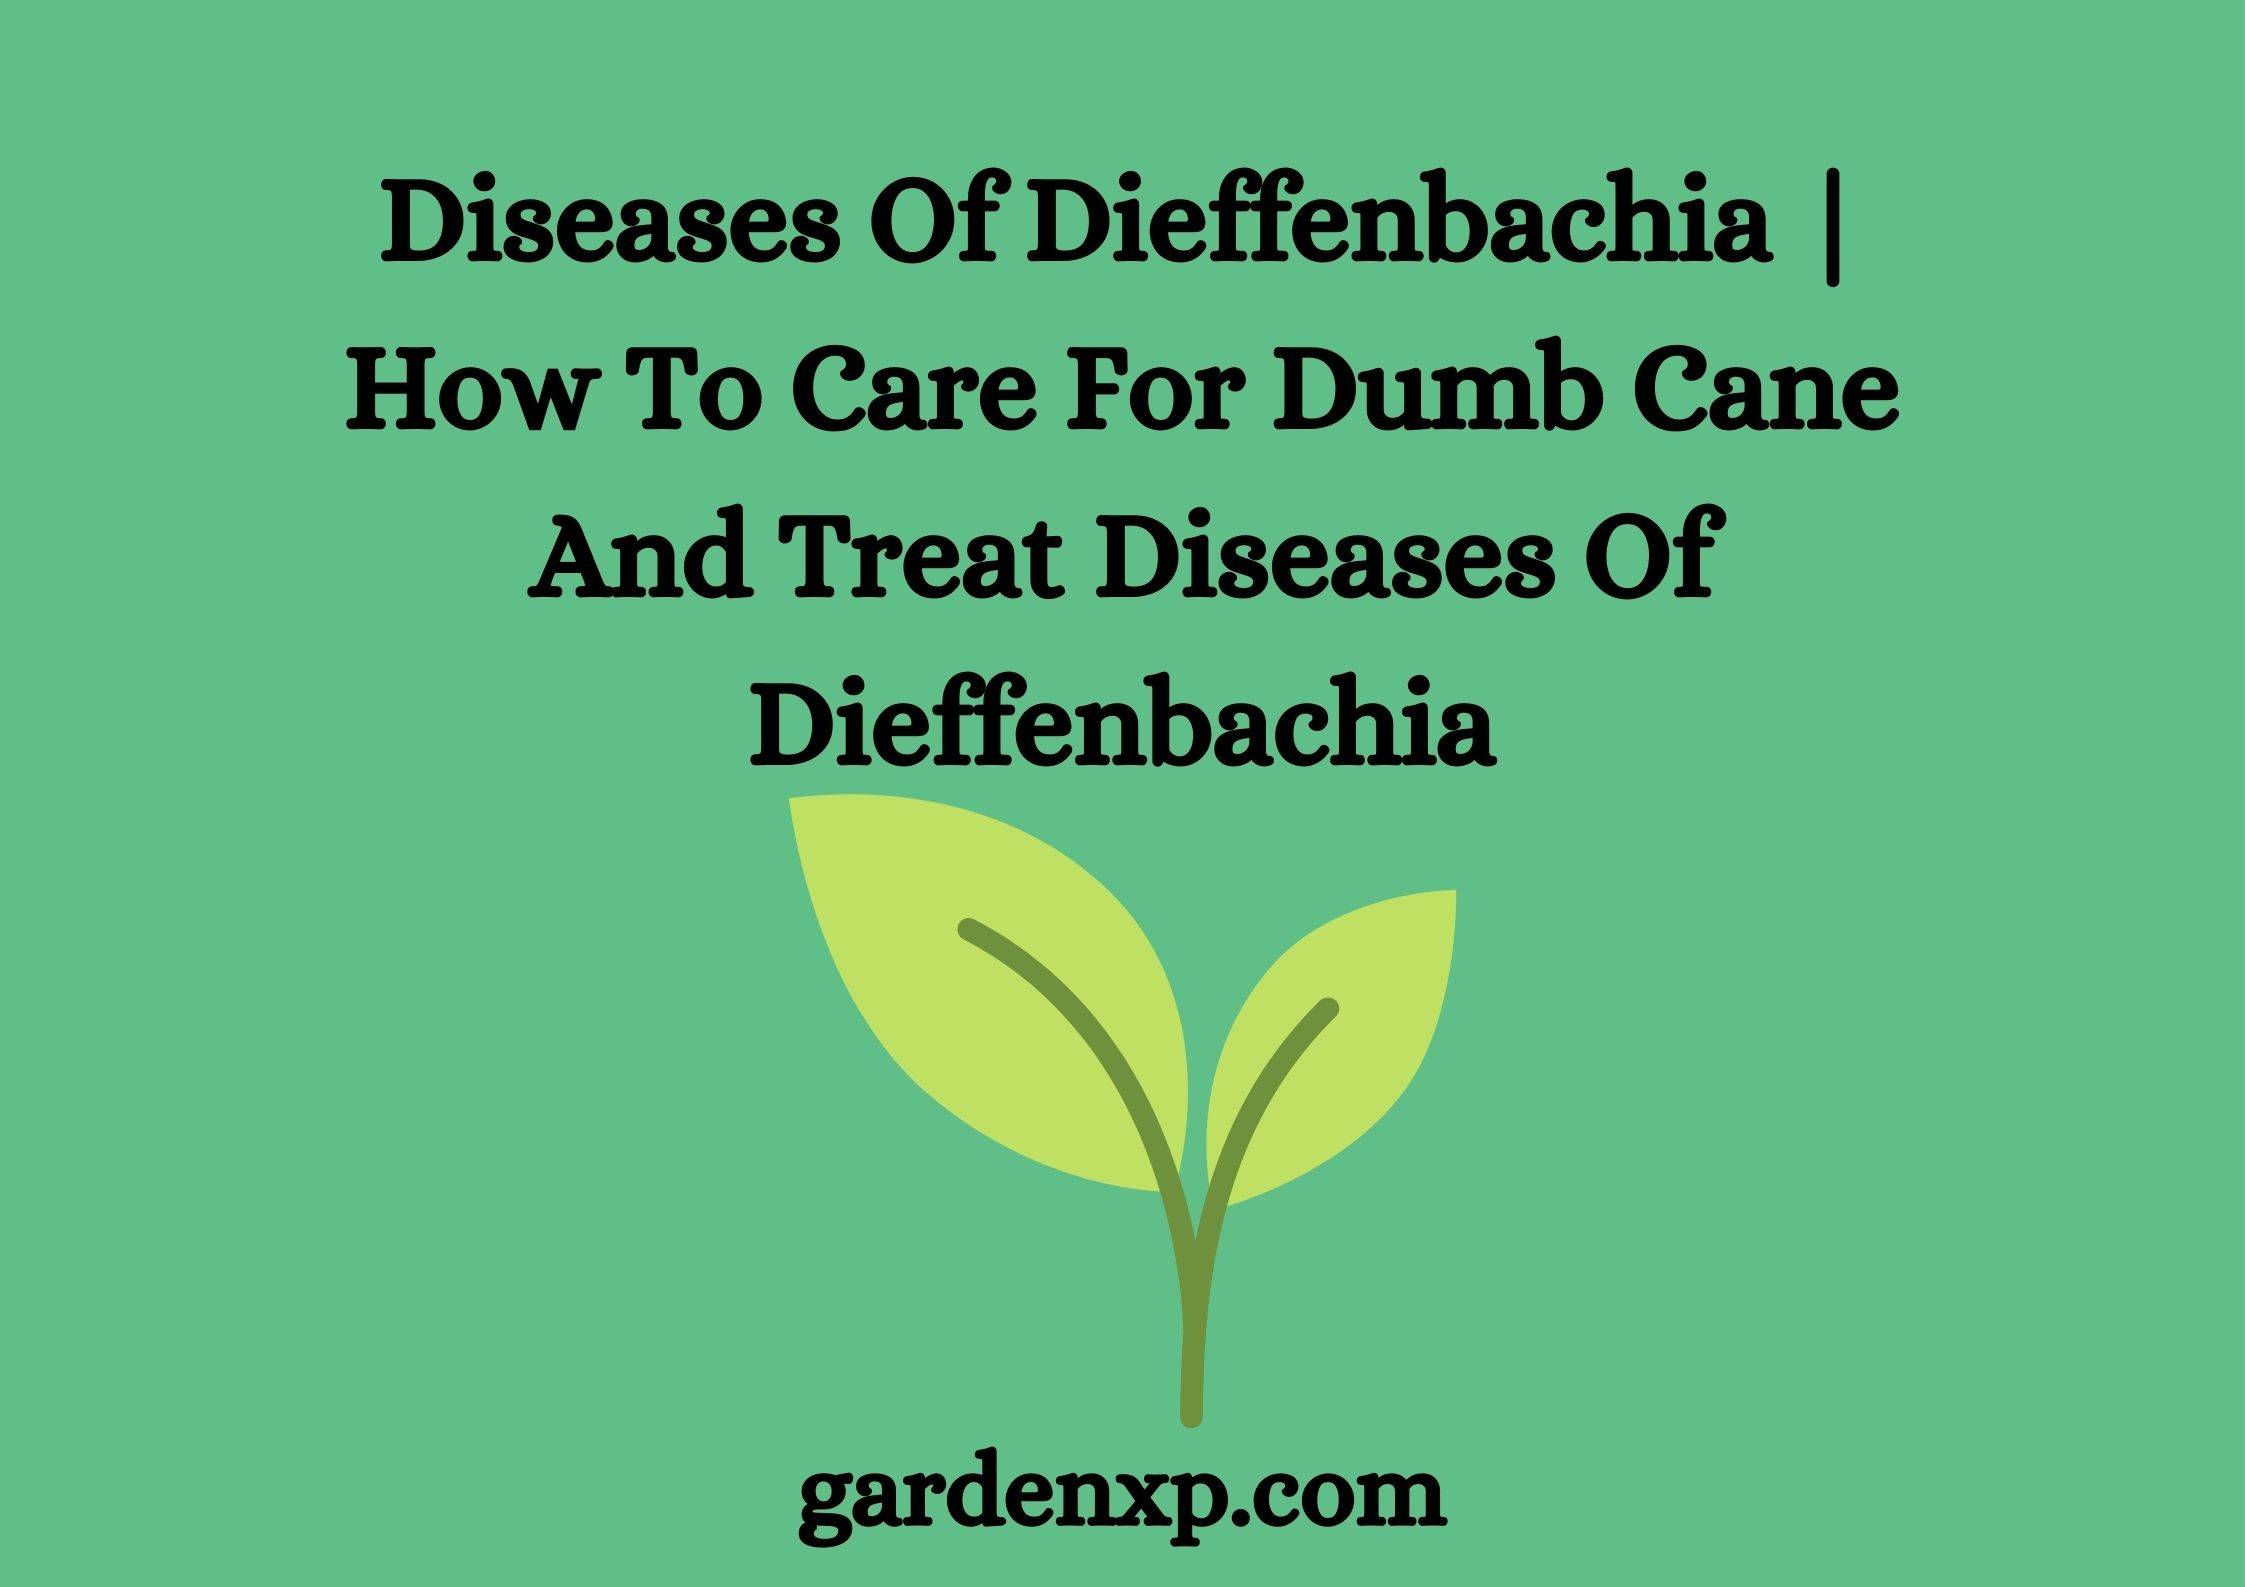 Dieffenbachia Care - How to Treat Disease With Dieffenbachia?